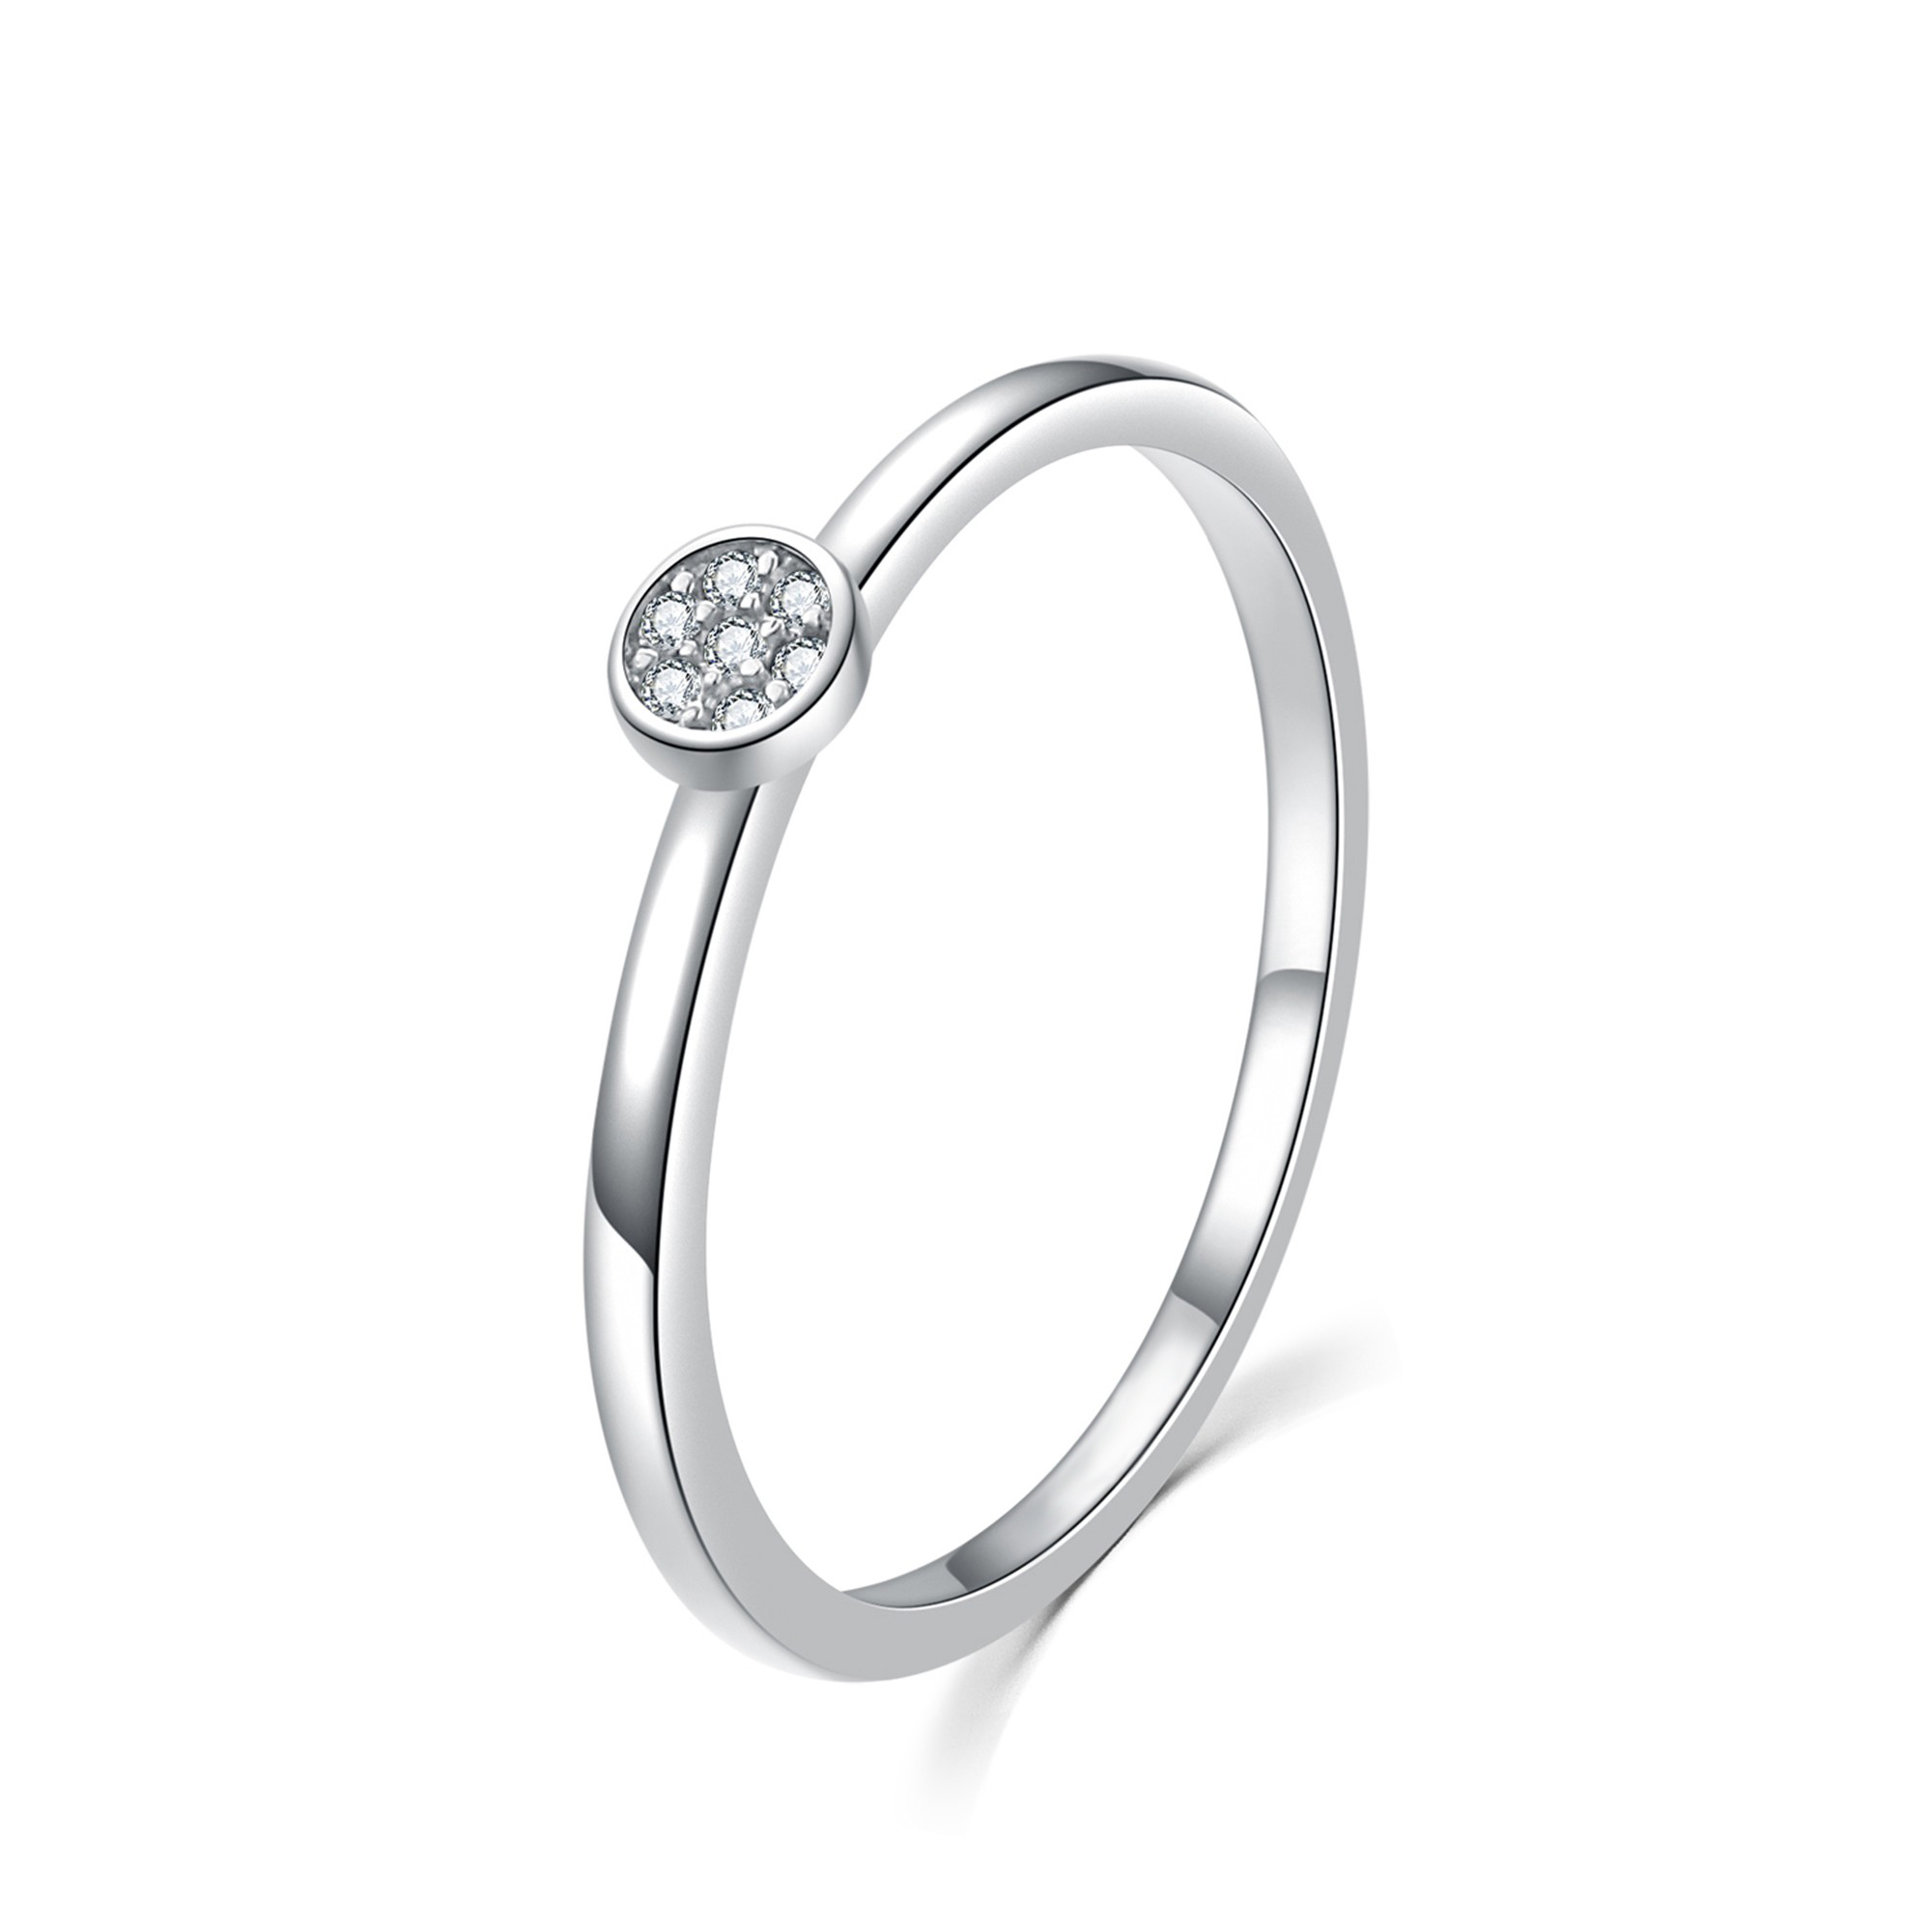 MOISS Moiss stříbrný prsten s bílými zirkony BEAUTY R0002053 Velikost 46 mm R0002054